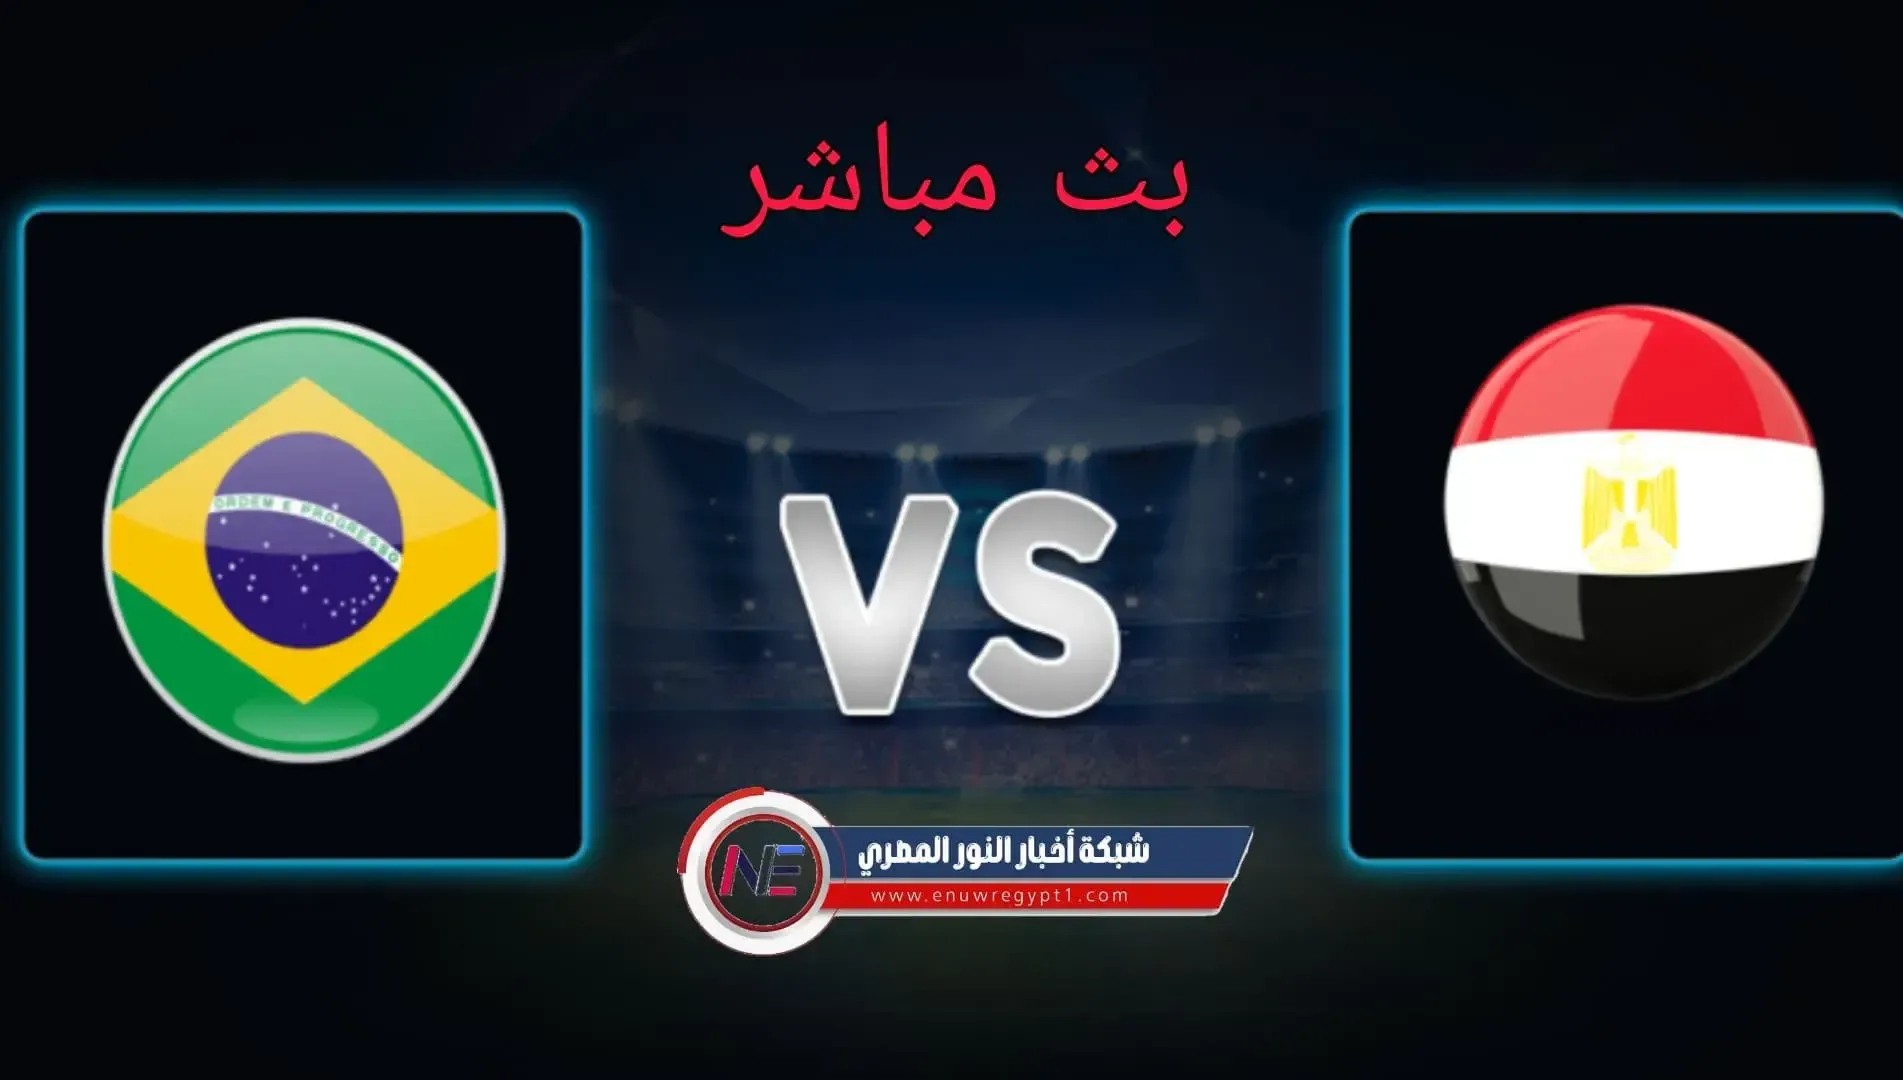 بث مباشر | مشاهدة مباراة مصر و البرازيل اليوم 31-07-2021 في بطولة اولمبياد طوكيو 2020 | يلا شوت يوتيوب HD الان بجودة عالية بدون تقطيع